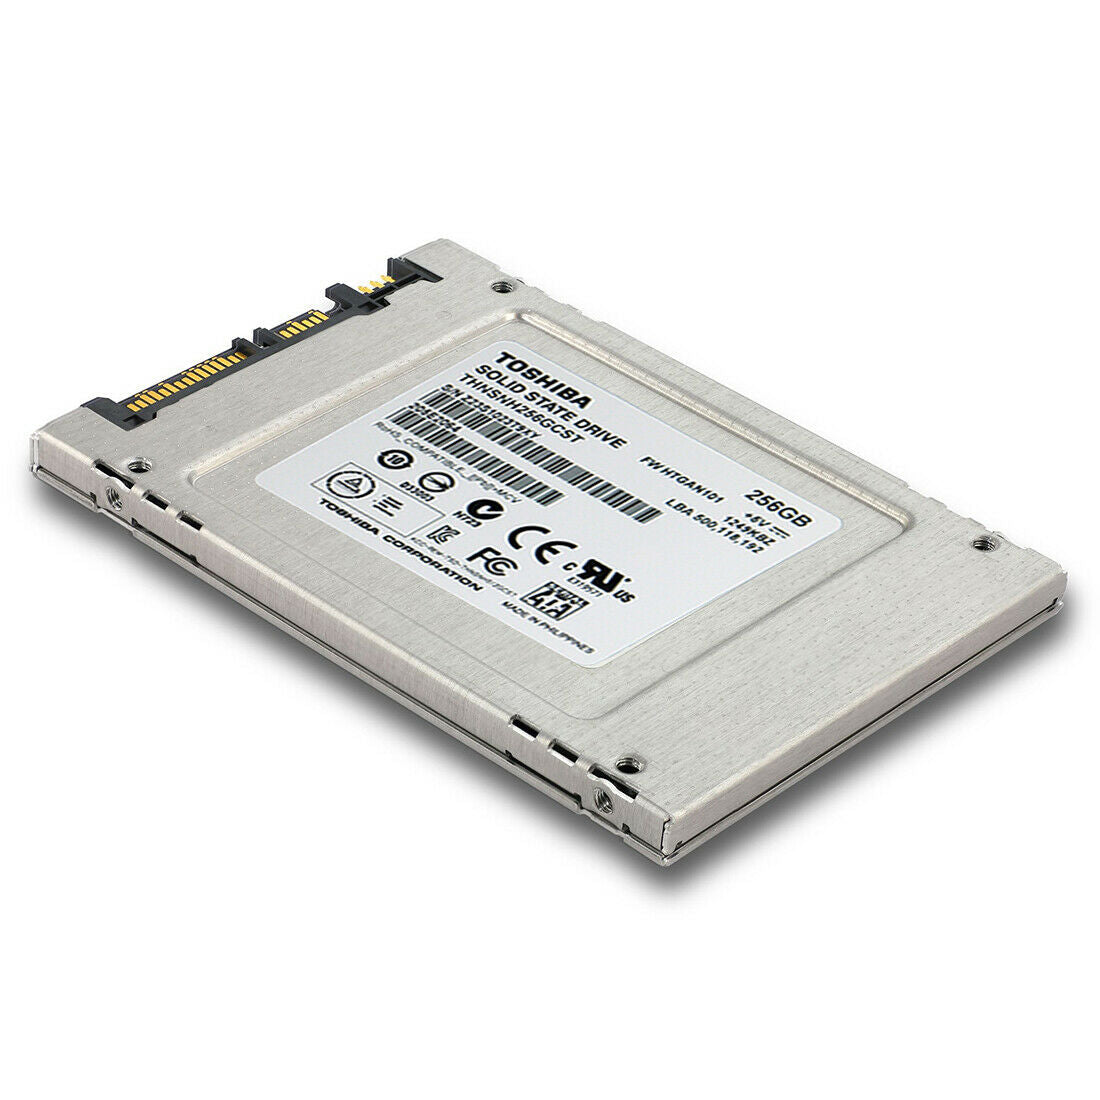 TOSHIBA (SATA) 2.5" SSD 256GB HG5d Series 6Gb/s SSD, THNSNH256GCST